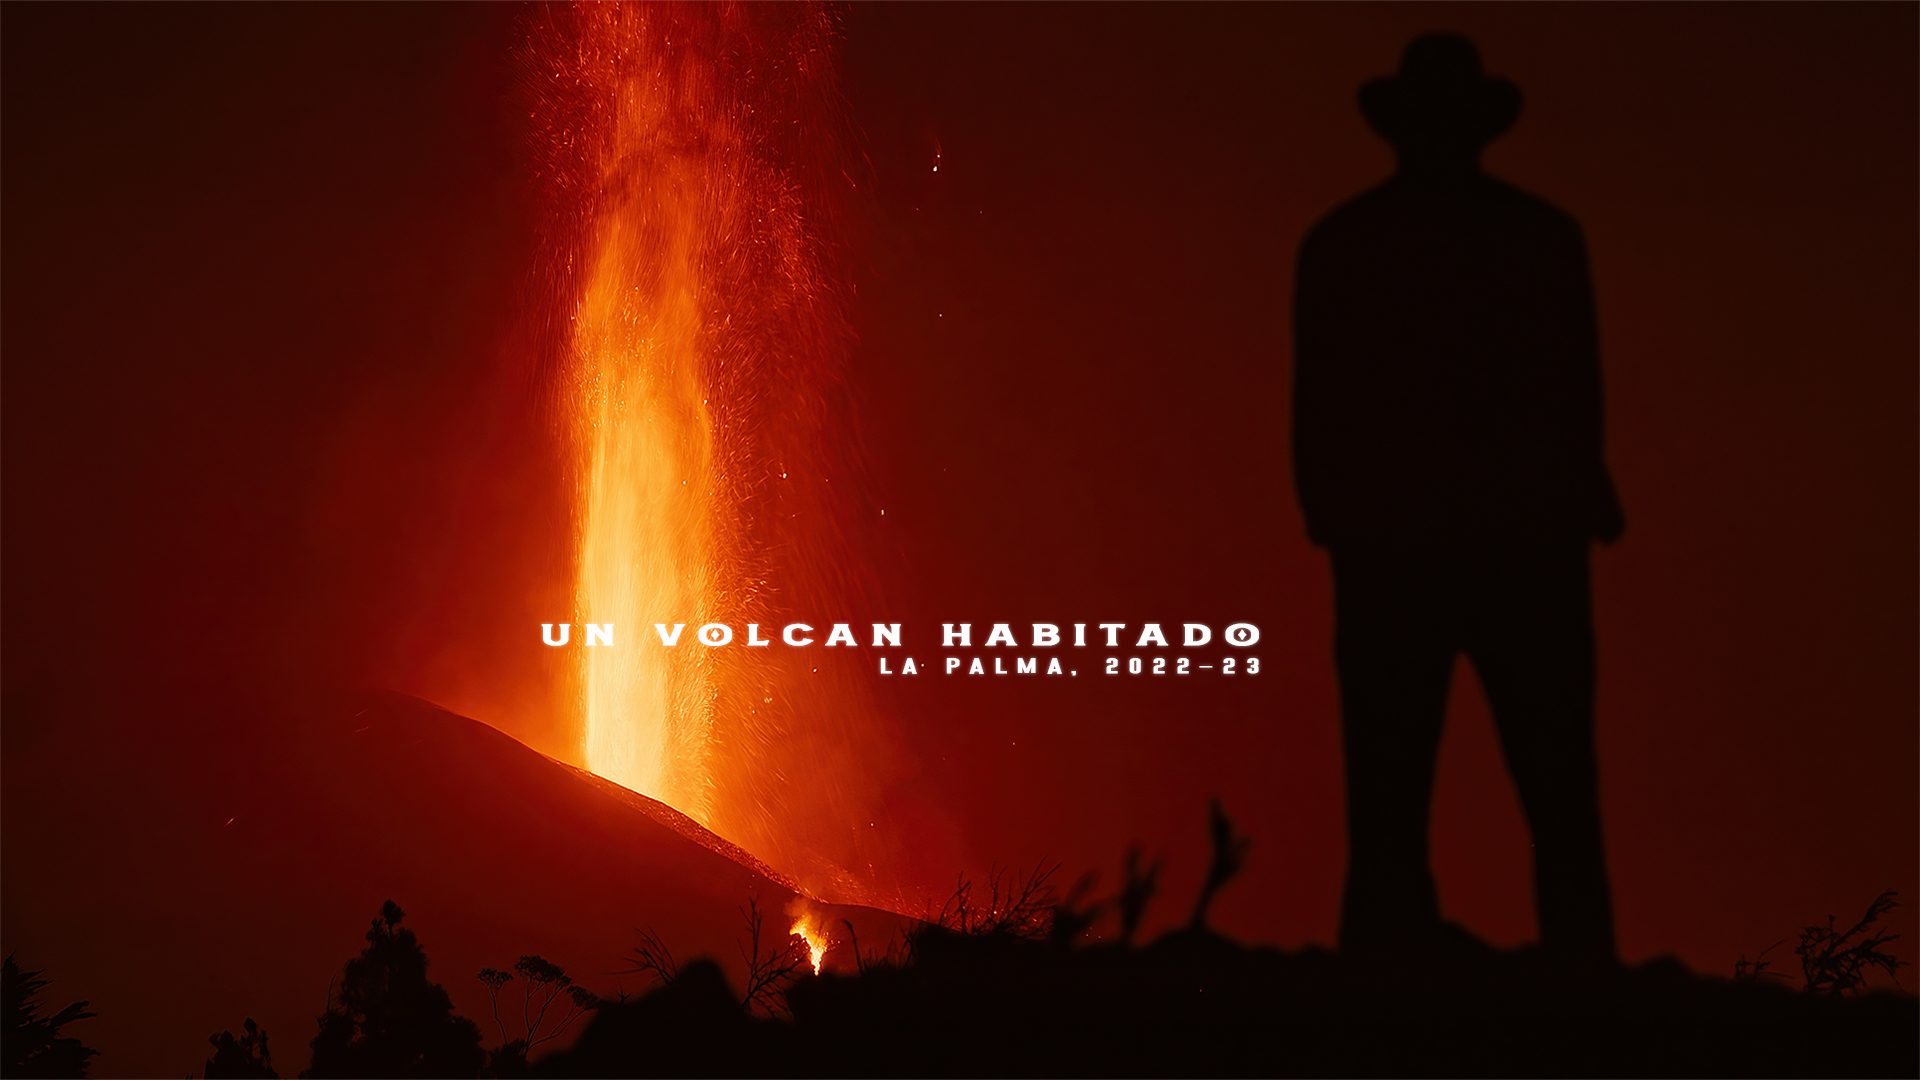 Un volcan habitado